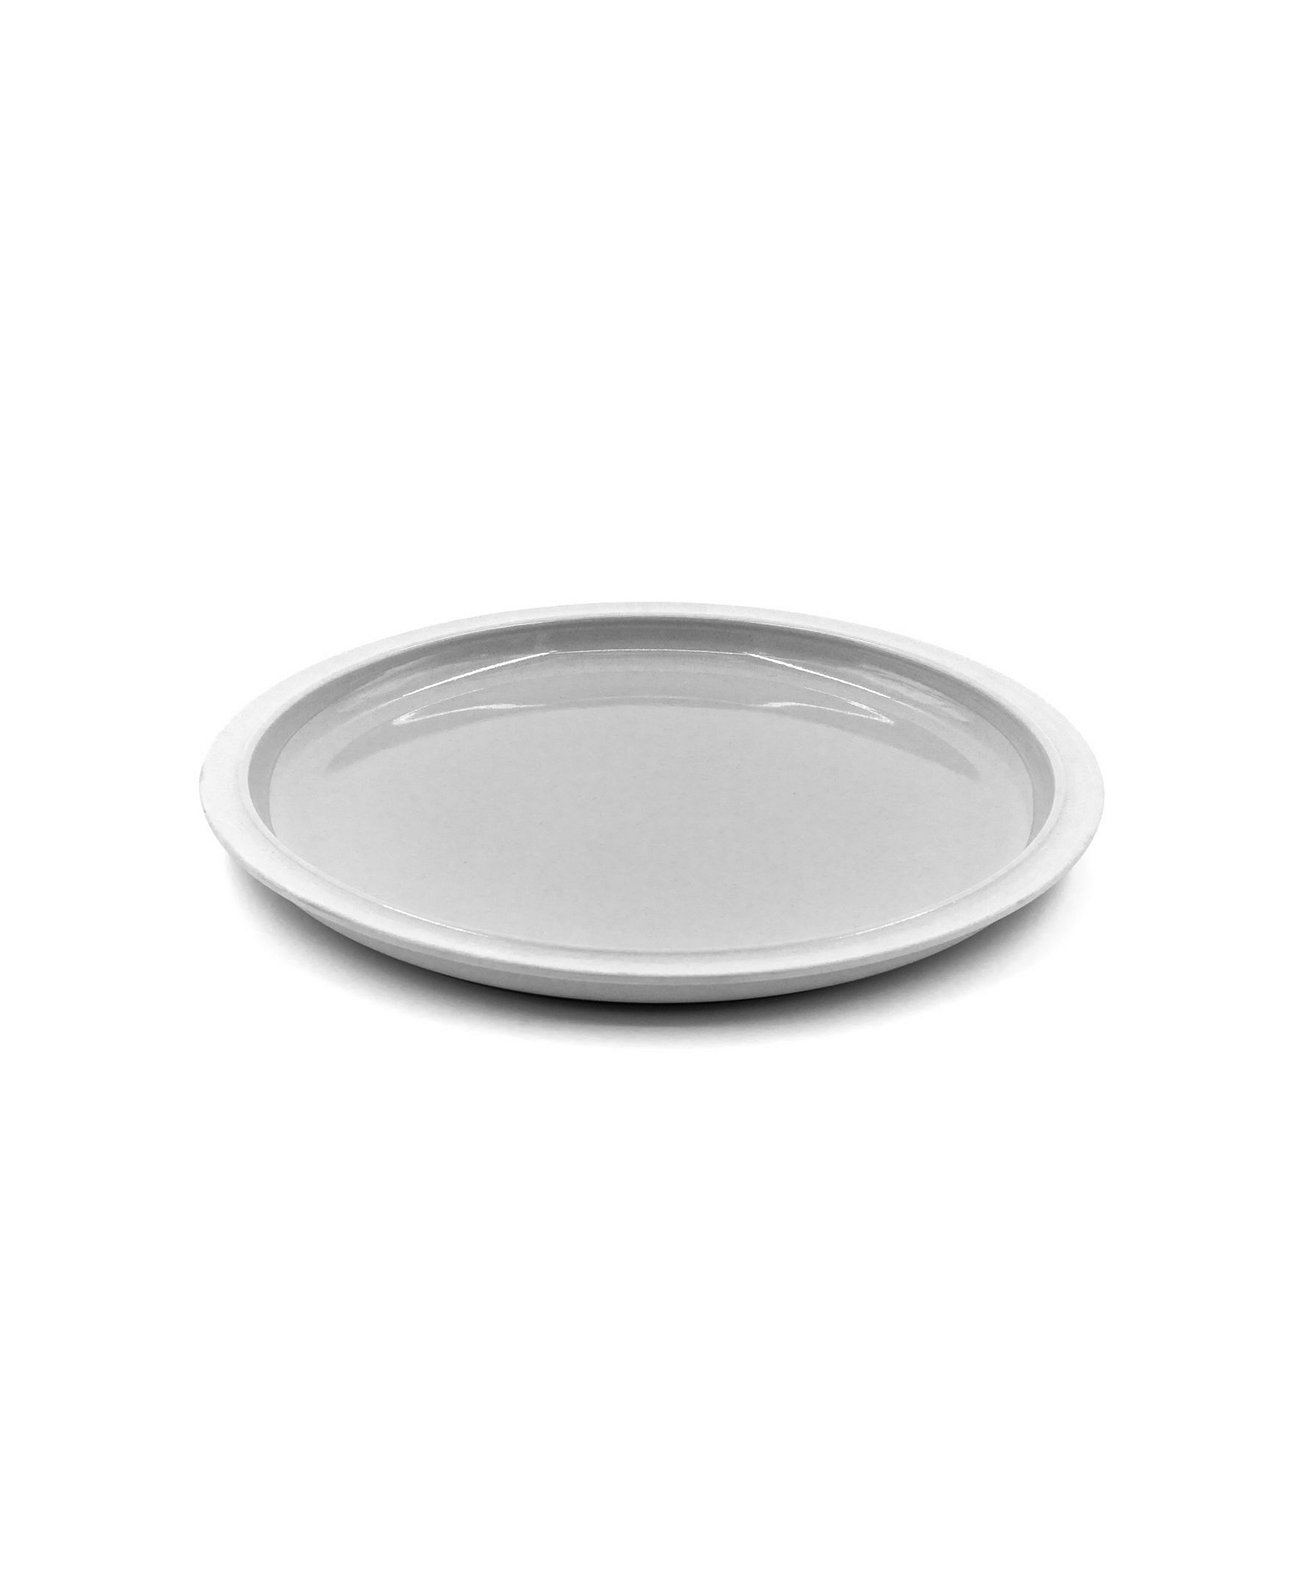 Обеденные тарелки из фарфора Tinge - набор из 2 шт. BOMSHBEE